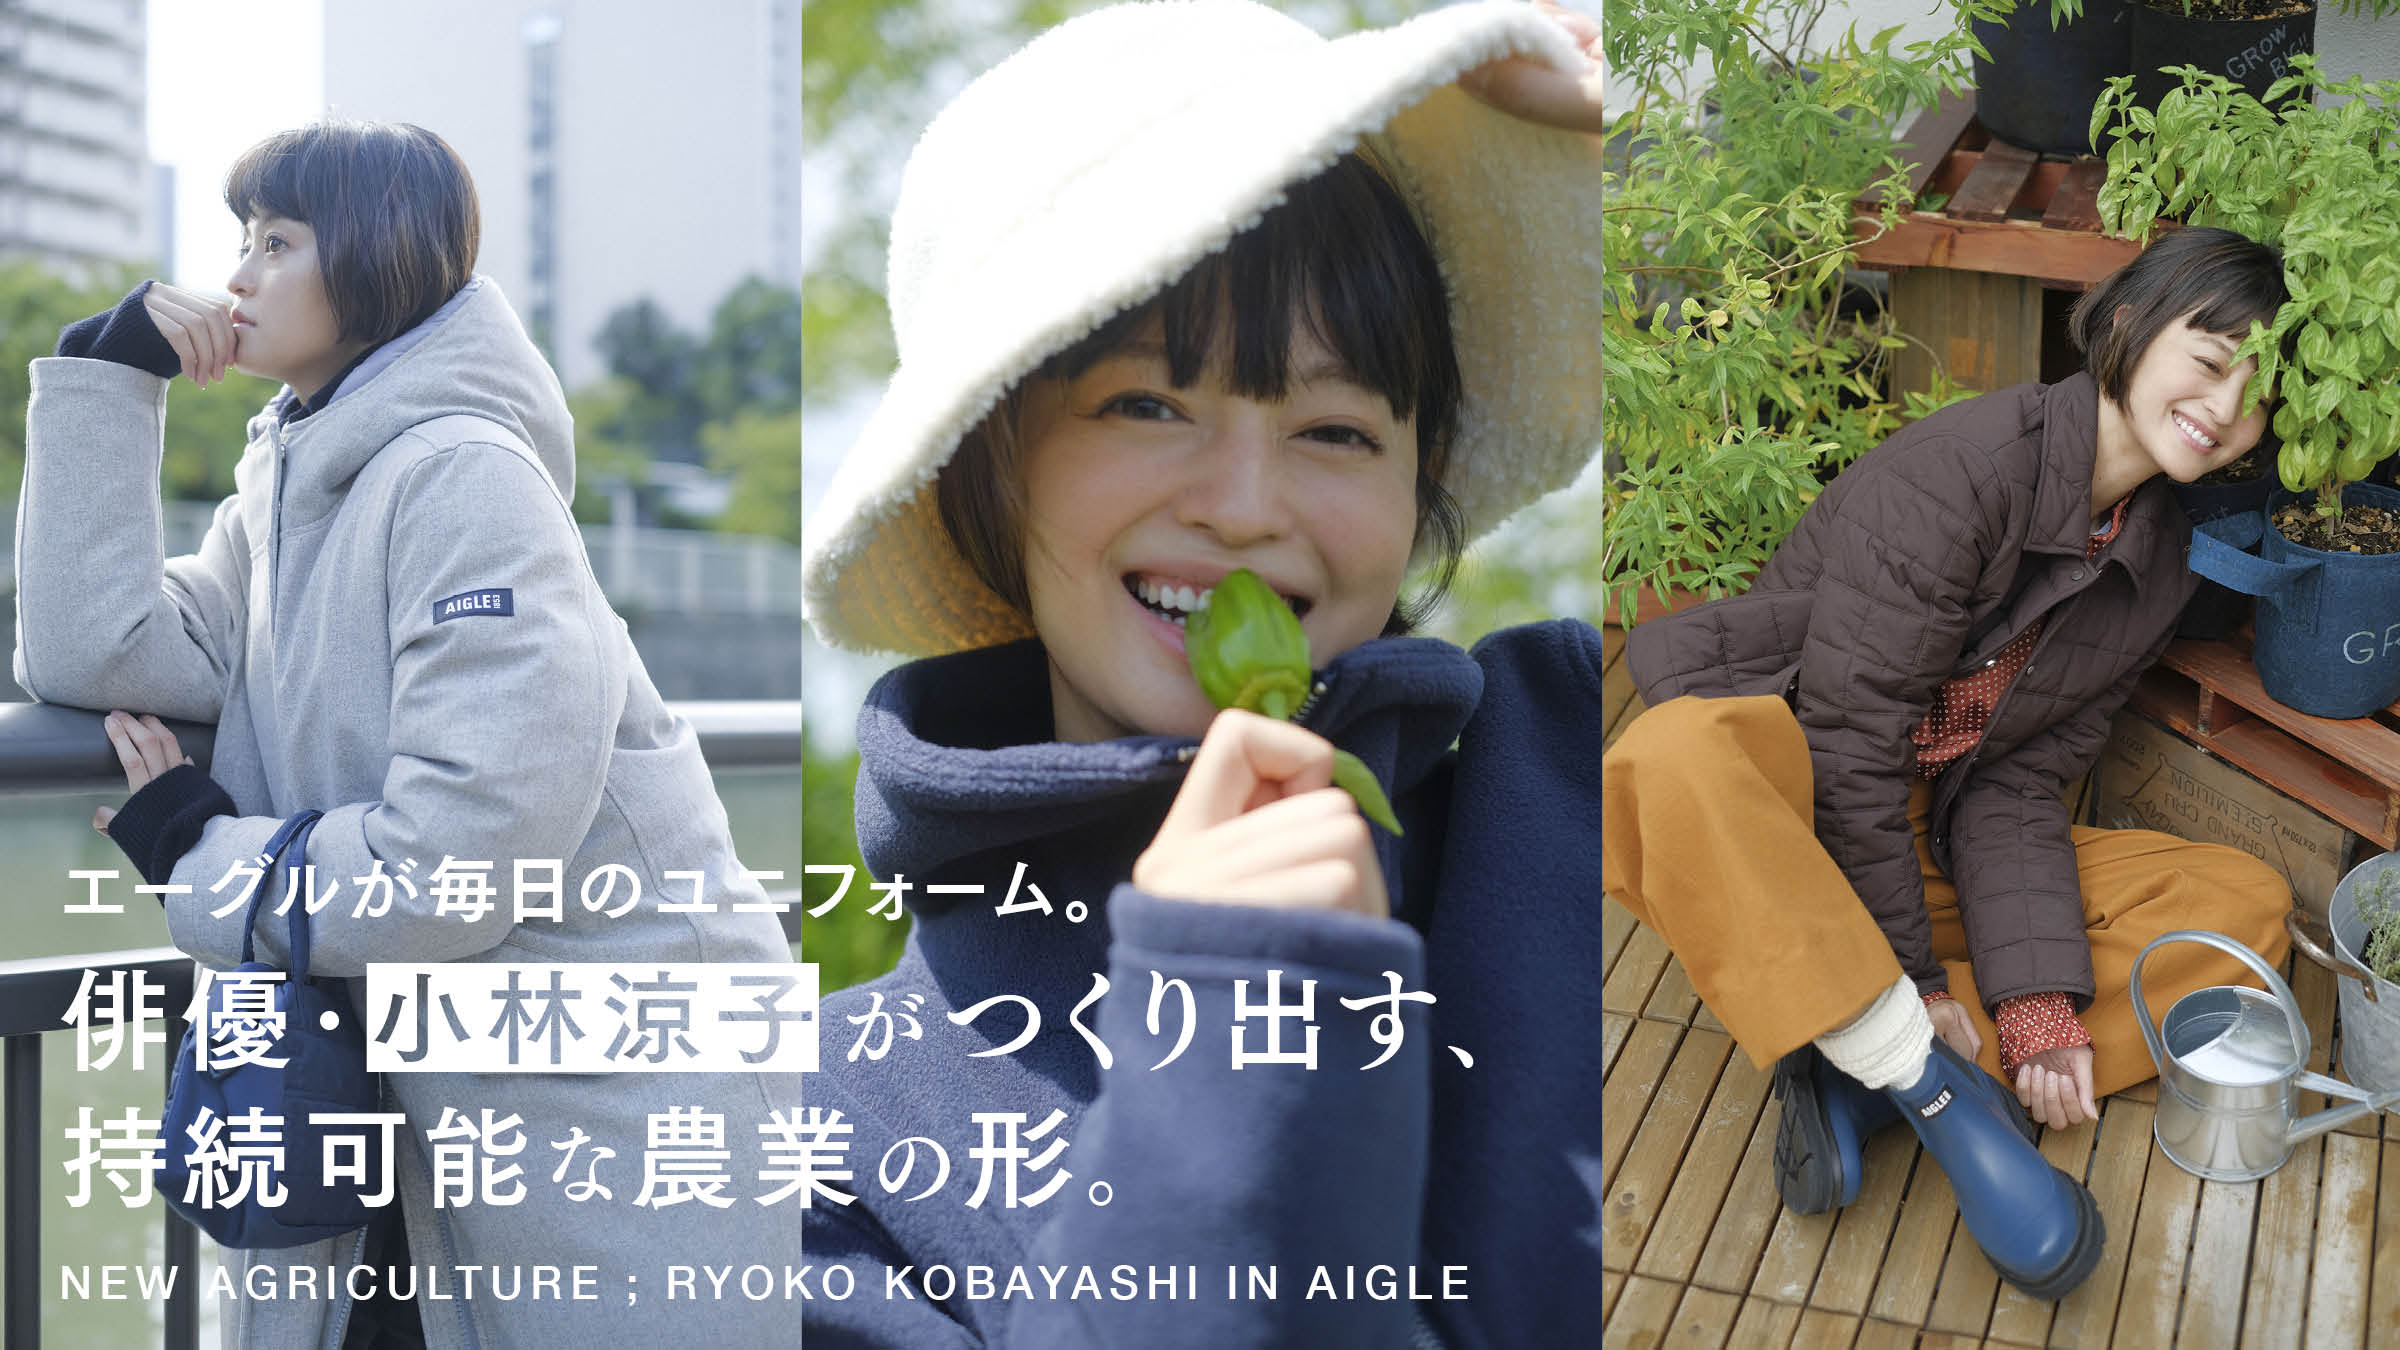 エーグルが毎日のユニフォーム。俳優・小林涼子がつくり出す、持続可能な農業の形。